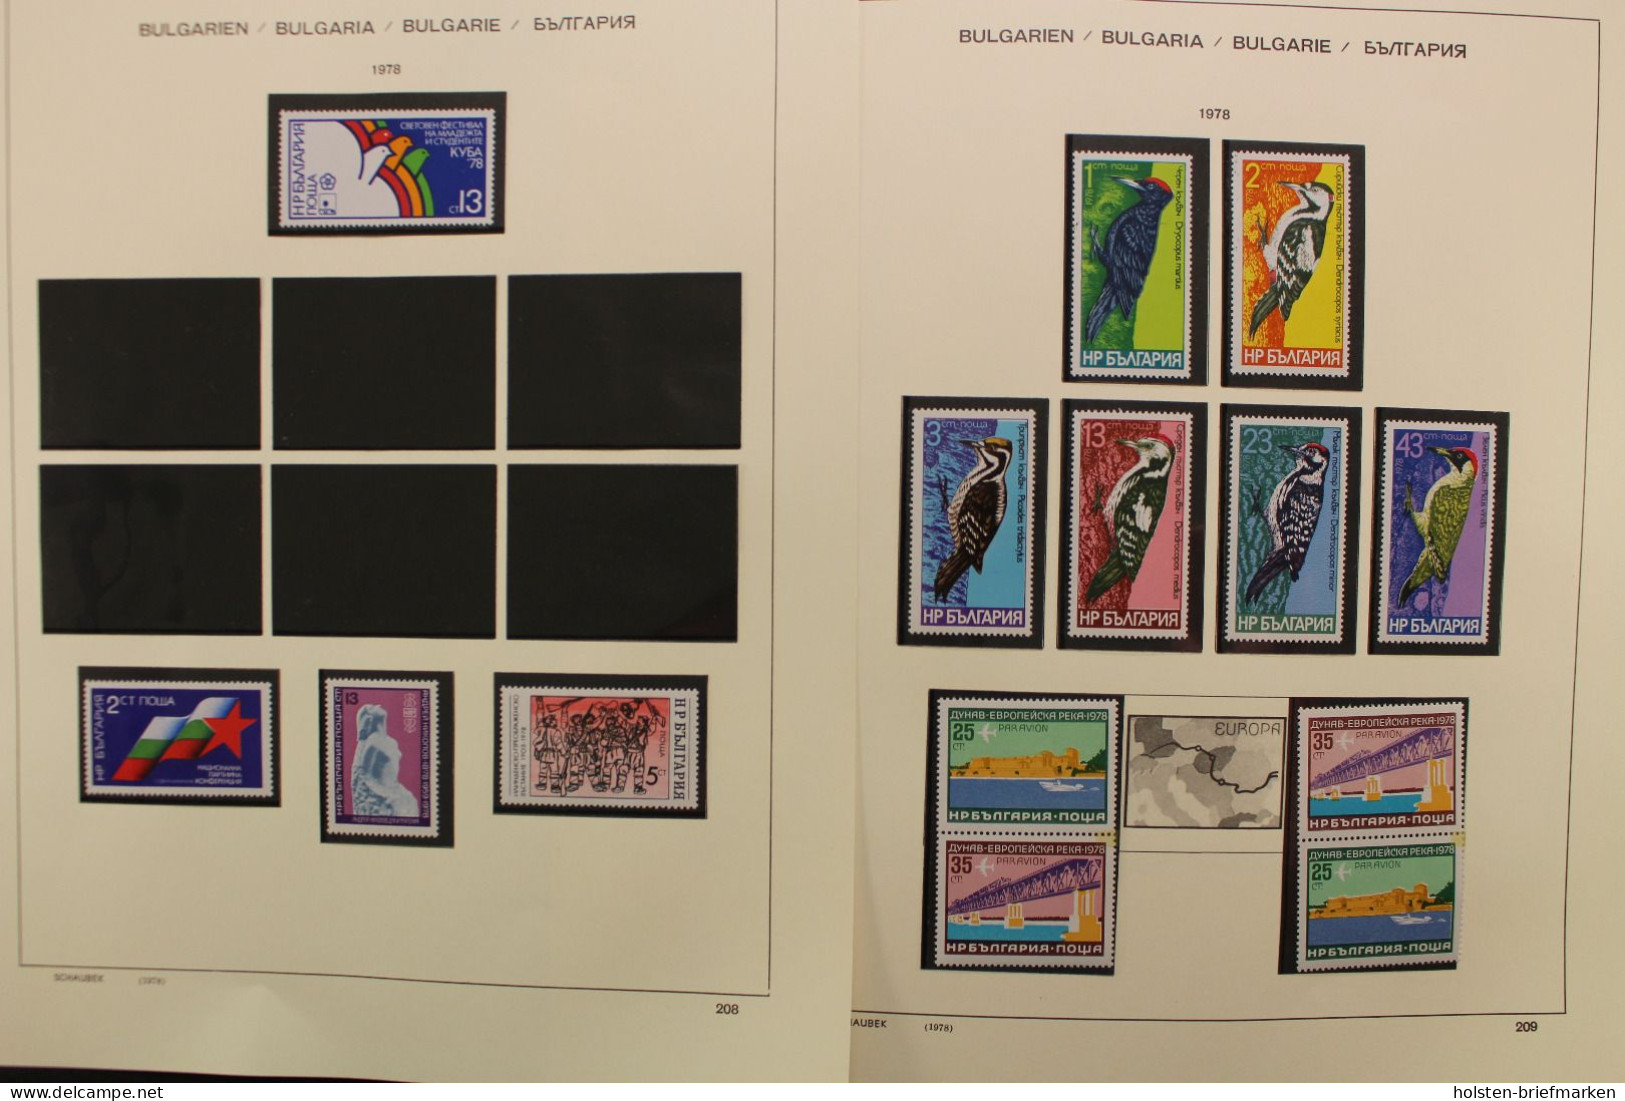 Bulgarien 1945-2000, postfrische Sammlung